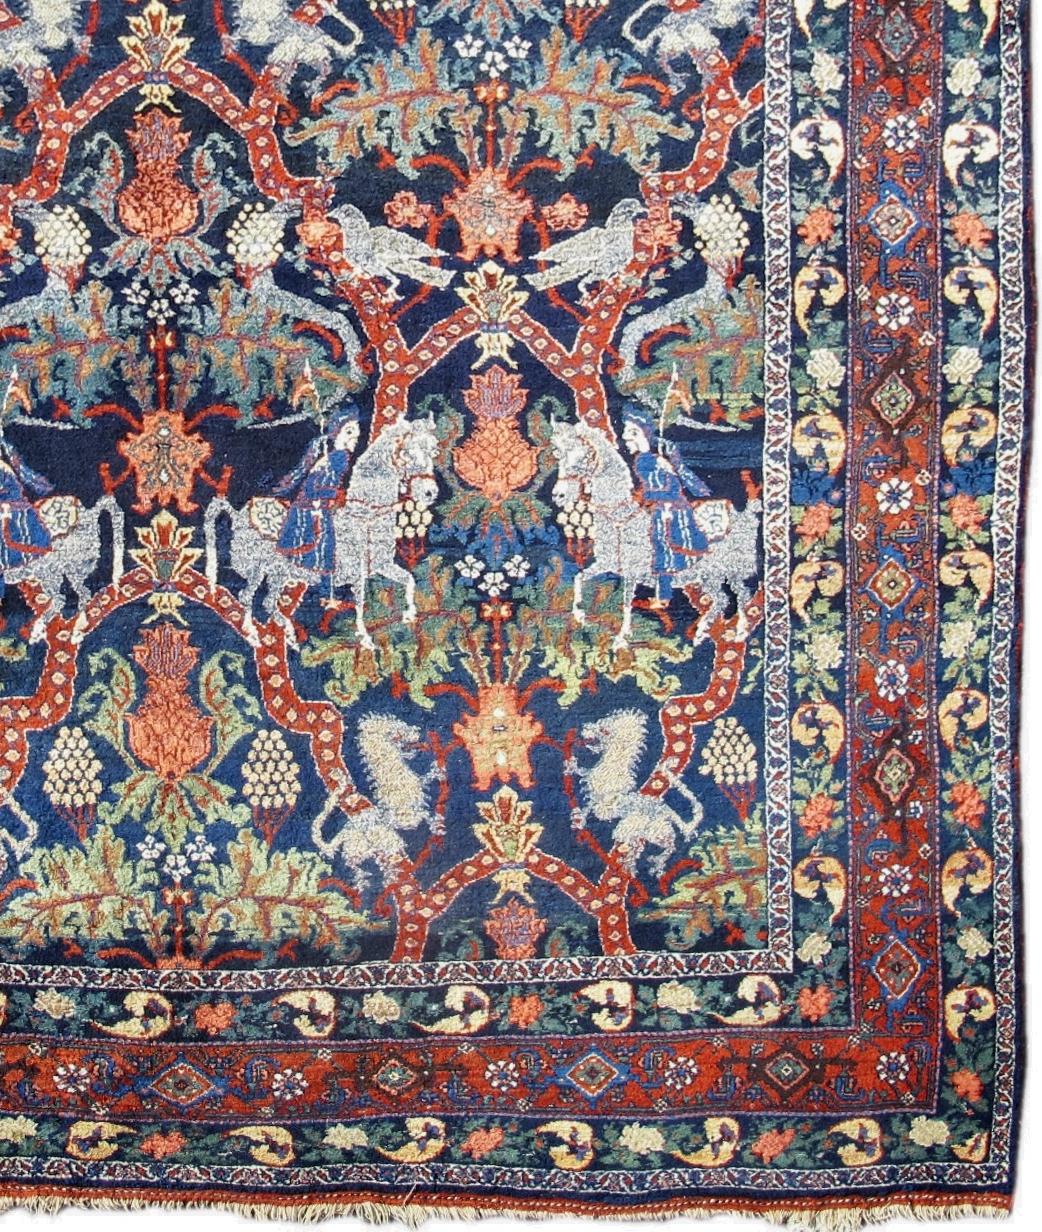 Persian Bidjar carpet. Measures: 8'4